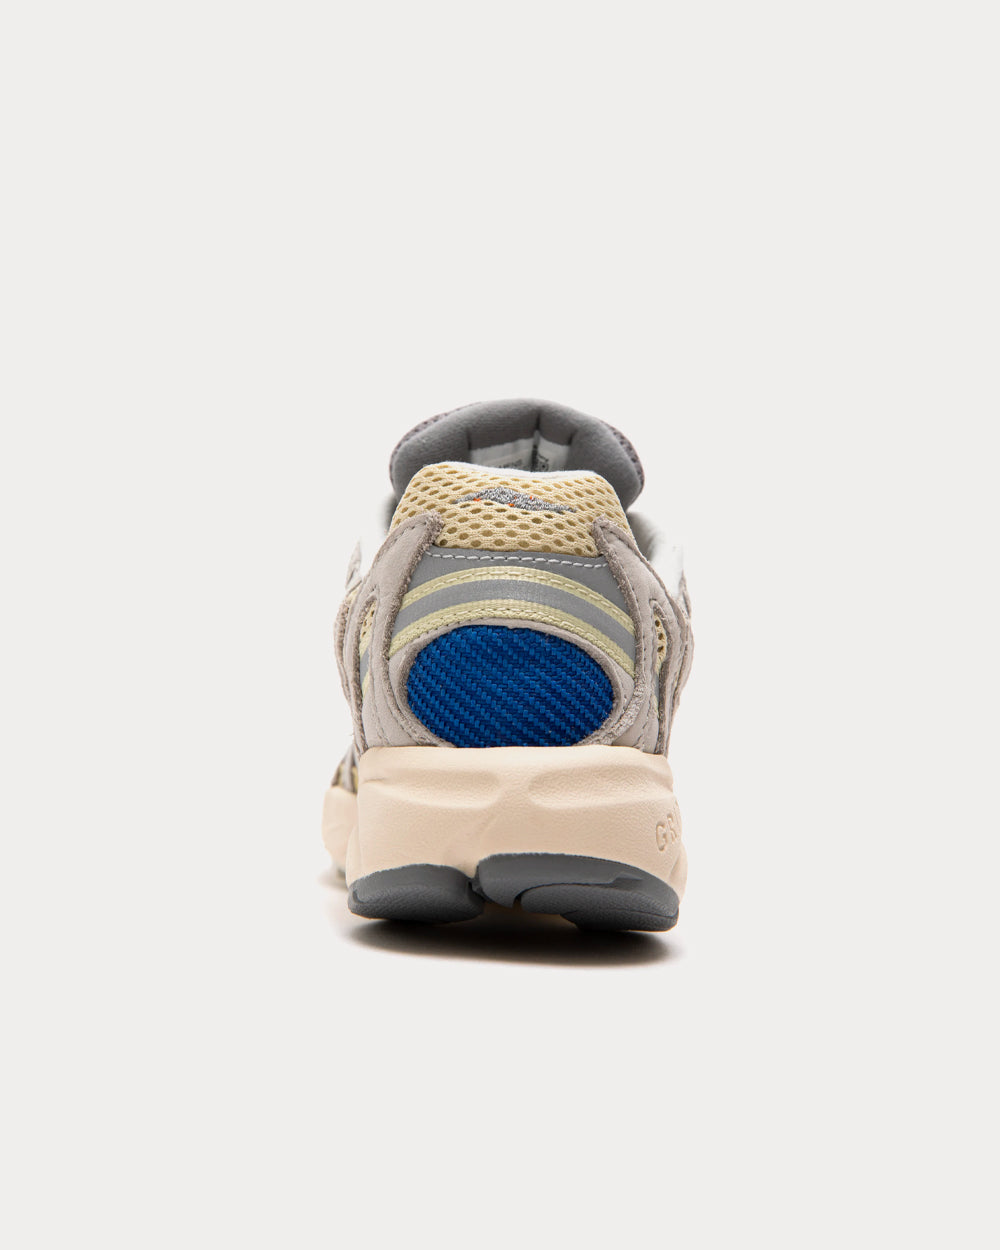 Saucony - Grid Azura 2000 Grey / Blue Low Top Sneakers